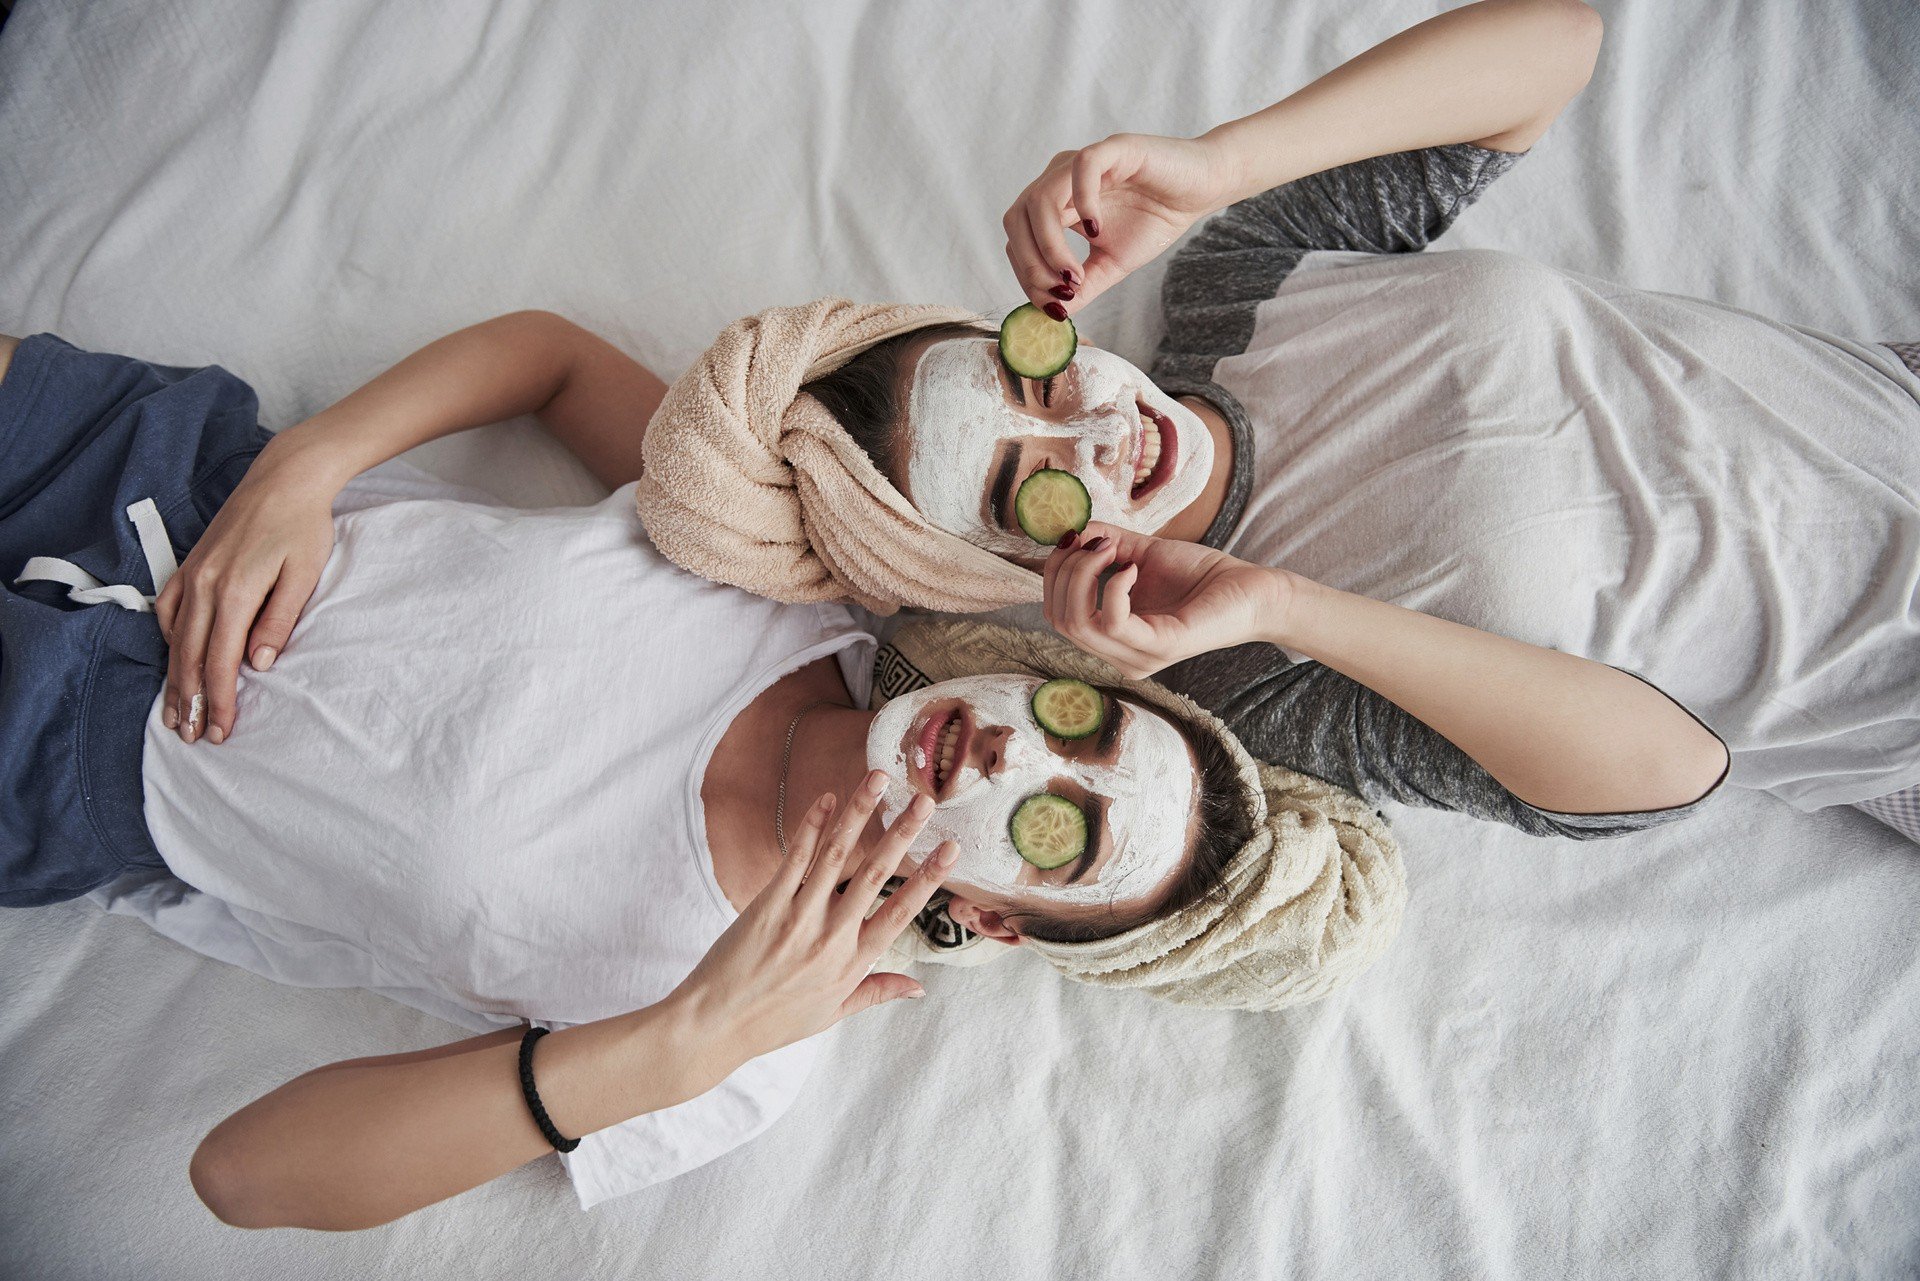 Domowe maseczki na twarz: rodzaje i właściwości. Po jakie produkty warto  sięgnąć? Przepisy na domowe maseczki na twarz dla każdego typu cery |  Strona Zdrowia